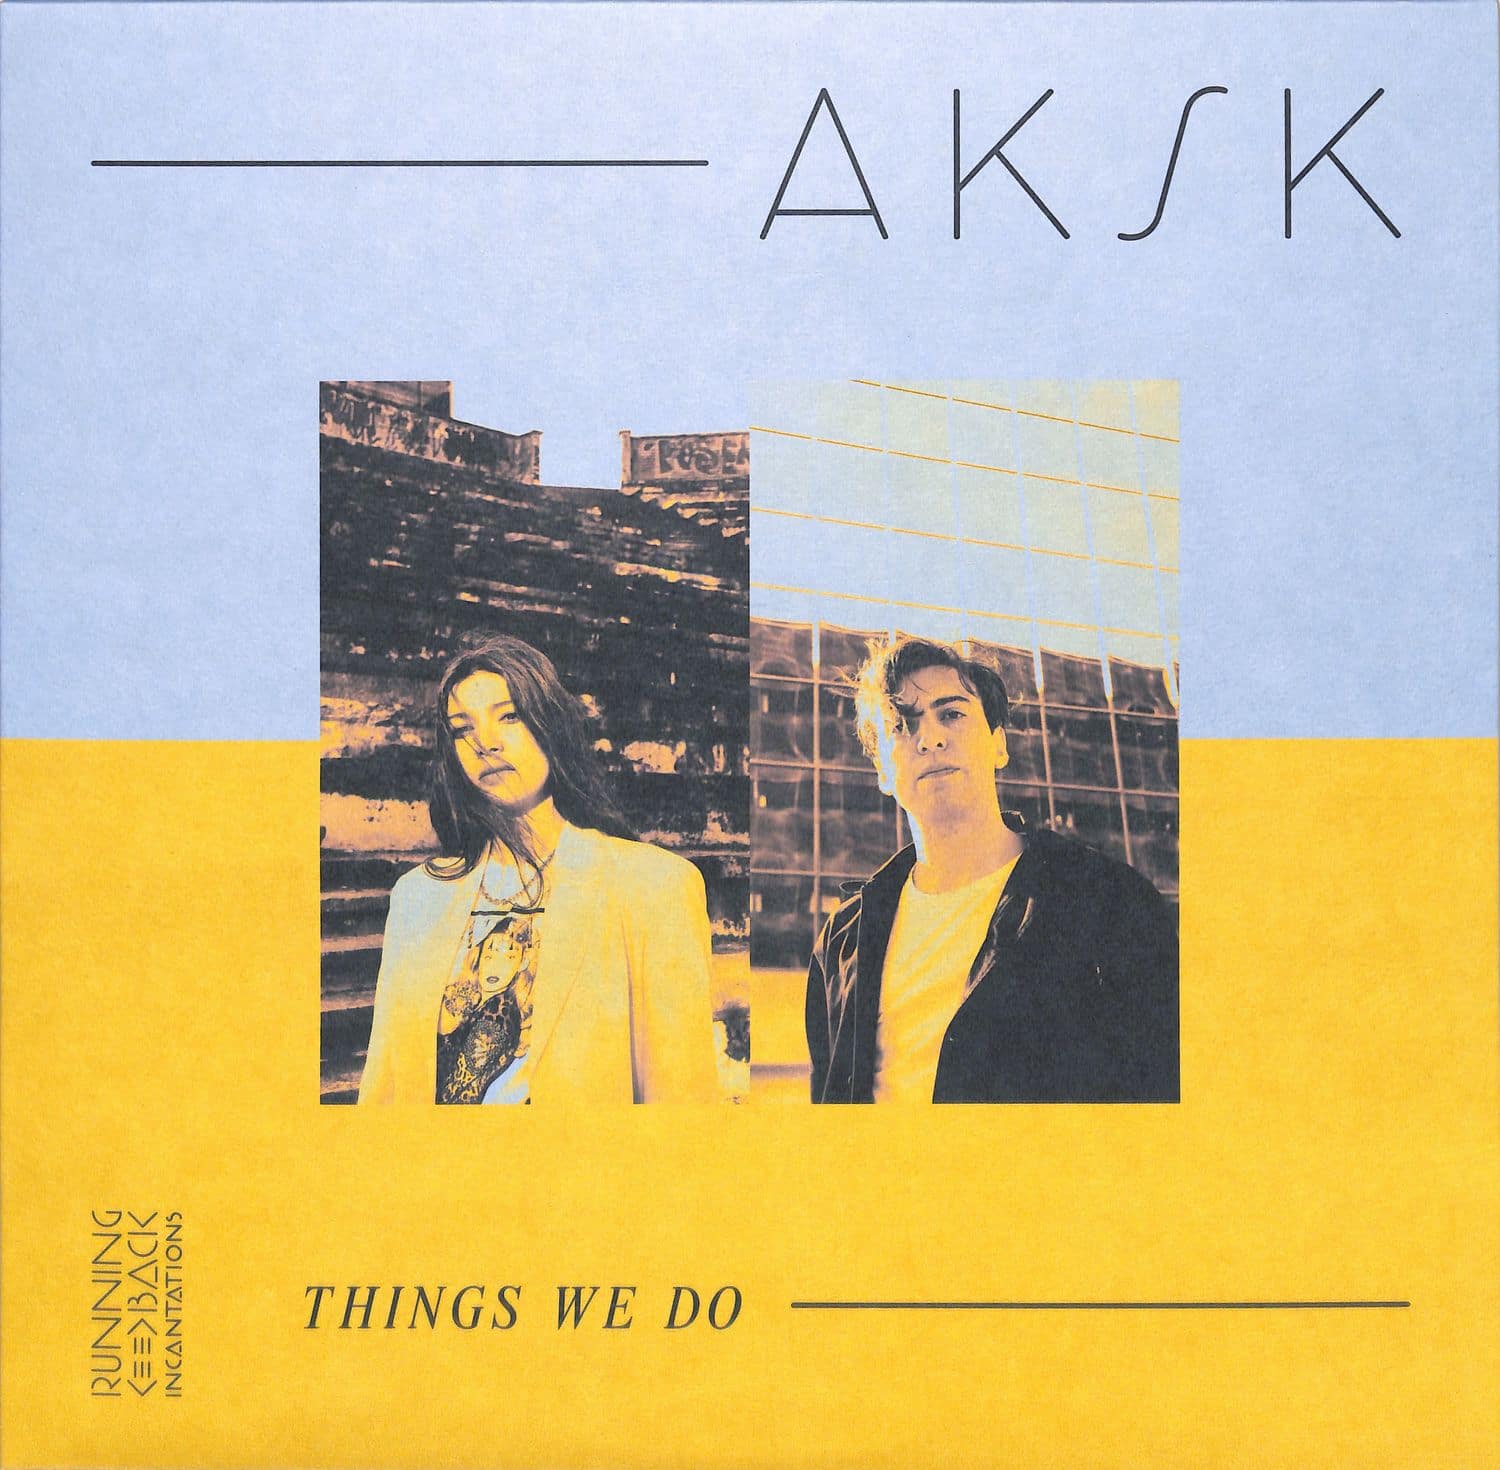 Aksk - THINGS WE DO 